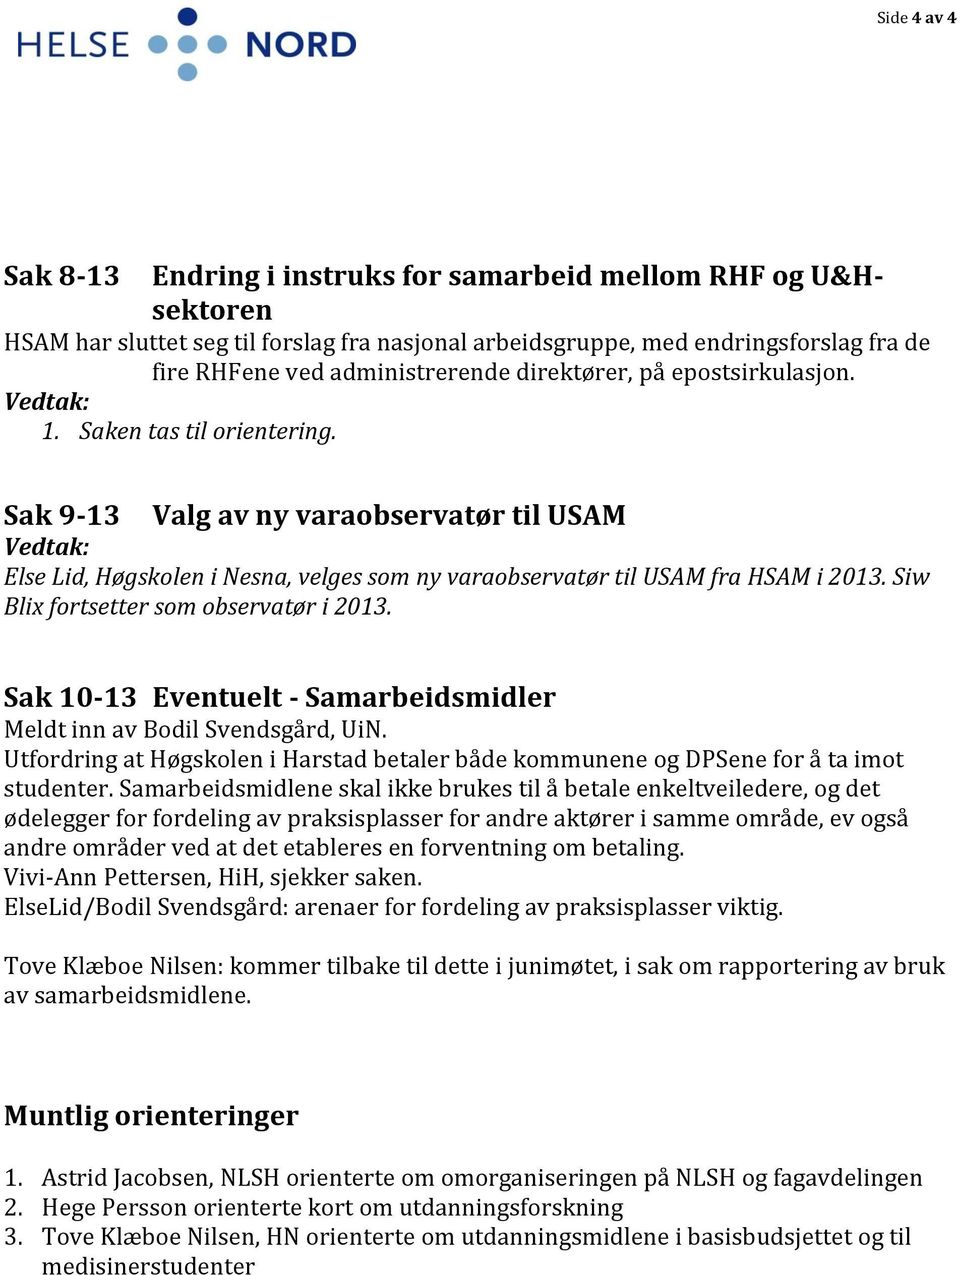 Sak 9-13 Valg av ny varaobservatør til USAM Vedtak: Else Lid, Høgskolen i Nesna, velges som ny varaobservatør til USAM fra HSAM i 2013. Siw Blix fortsetter som observatør i 2013.